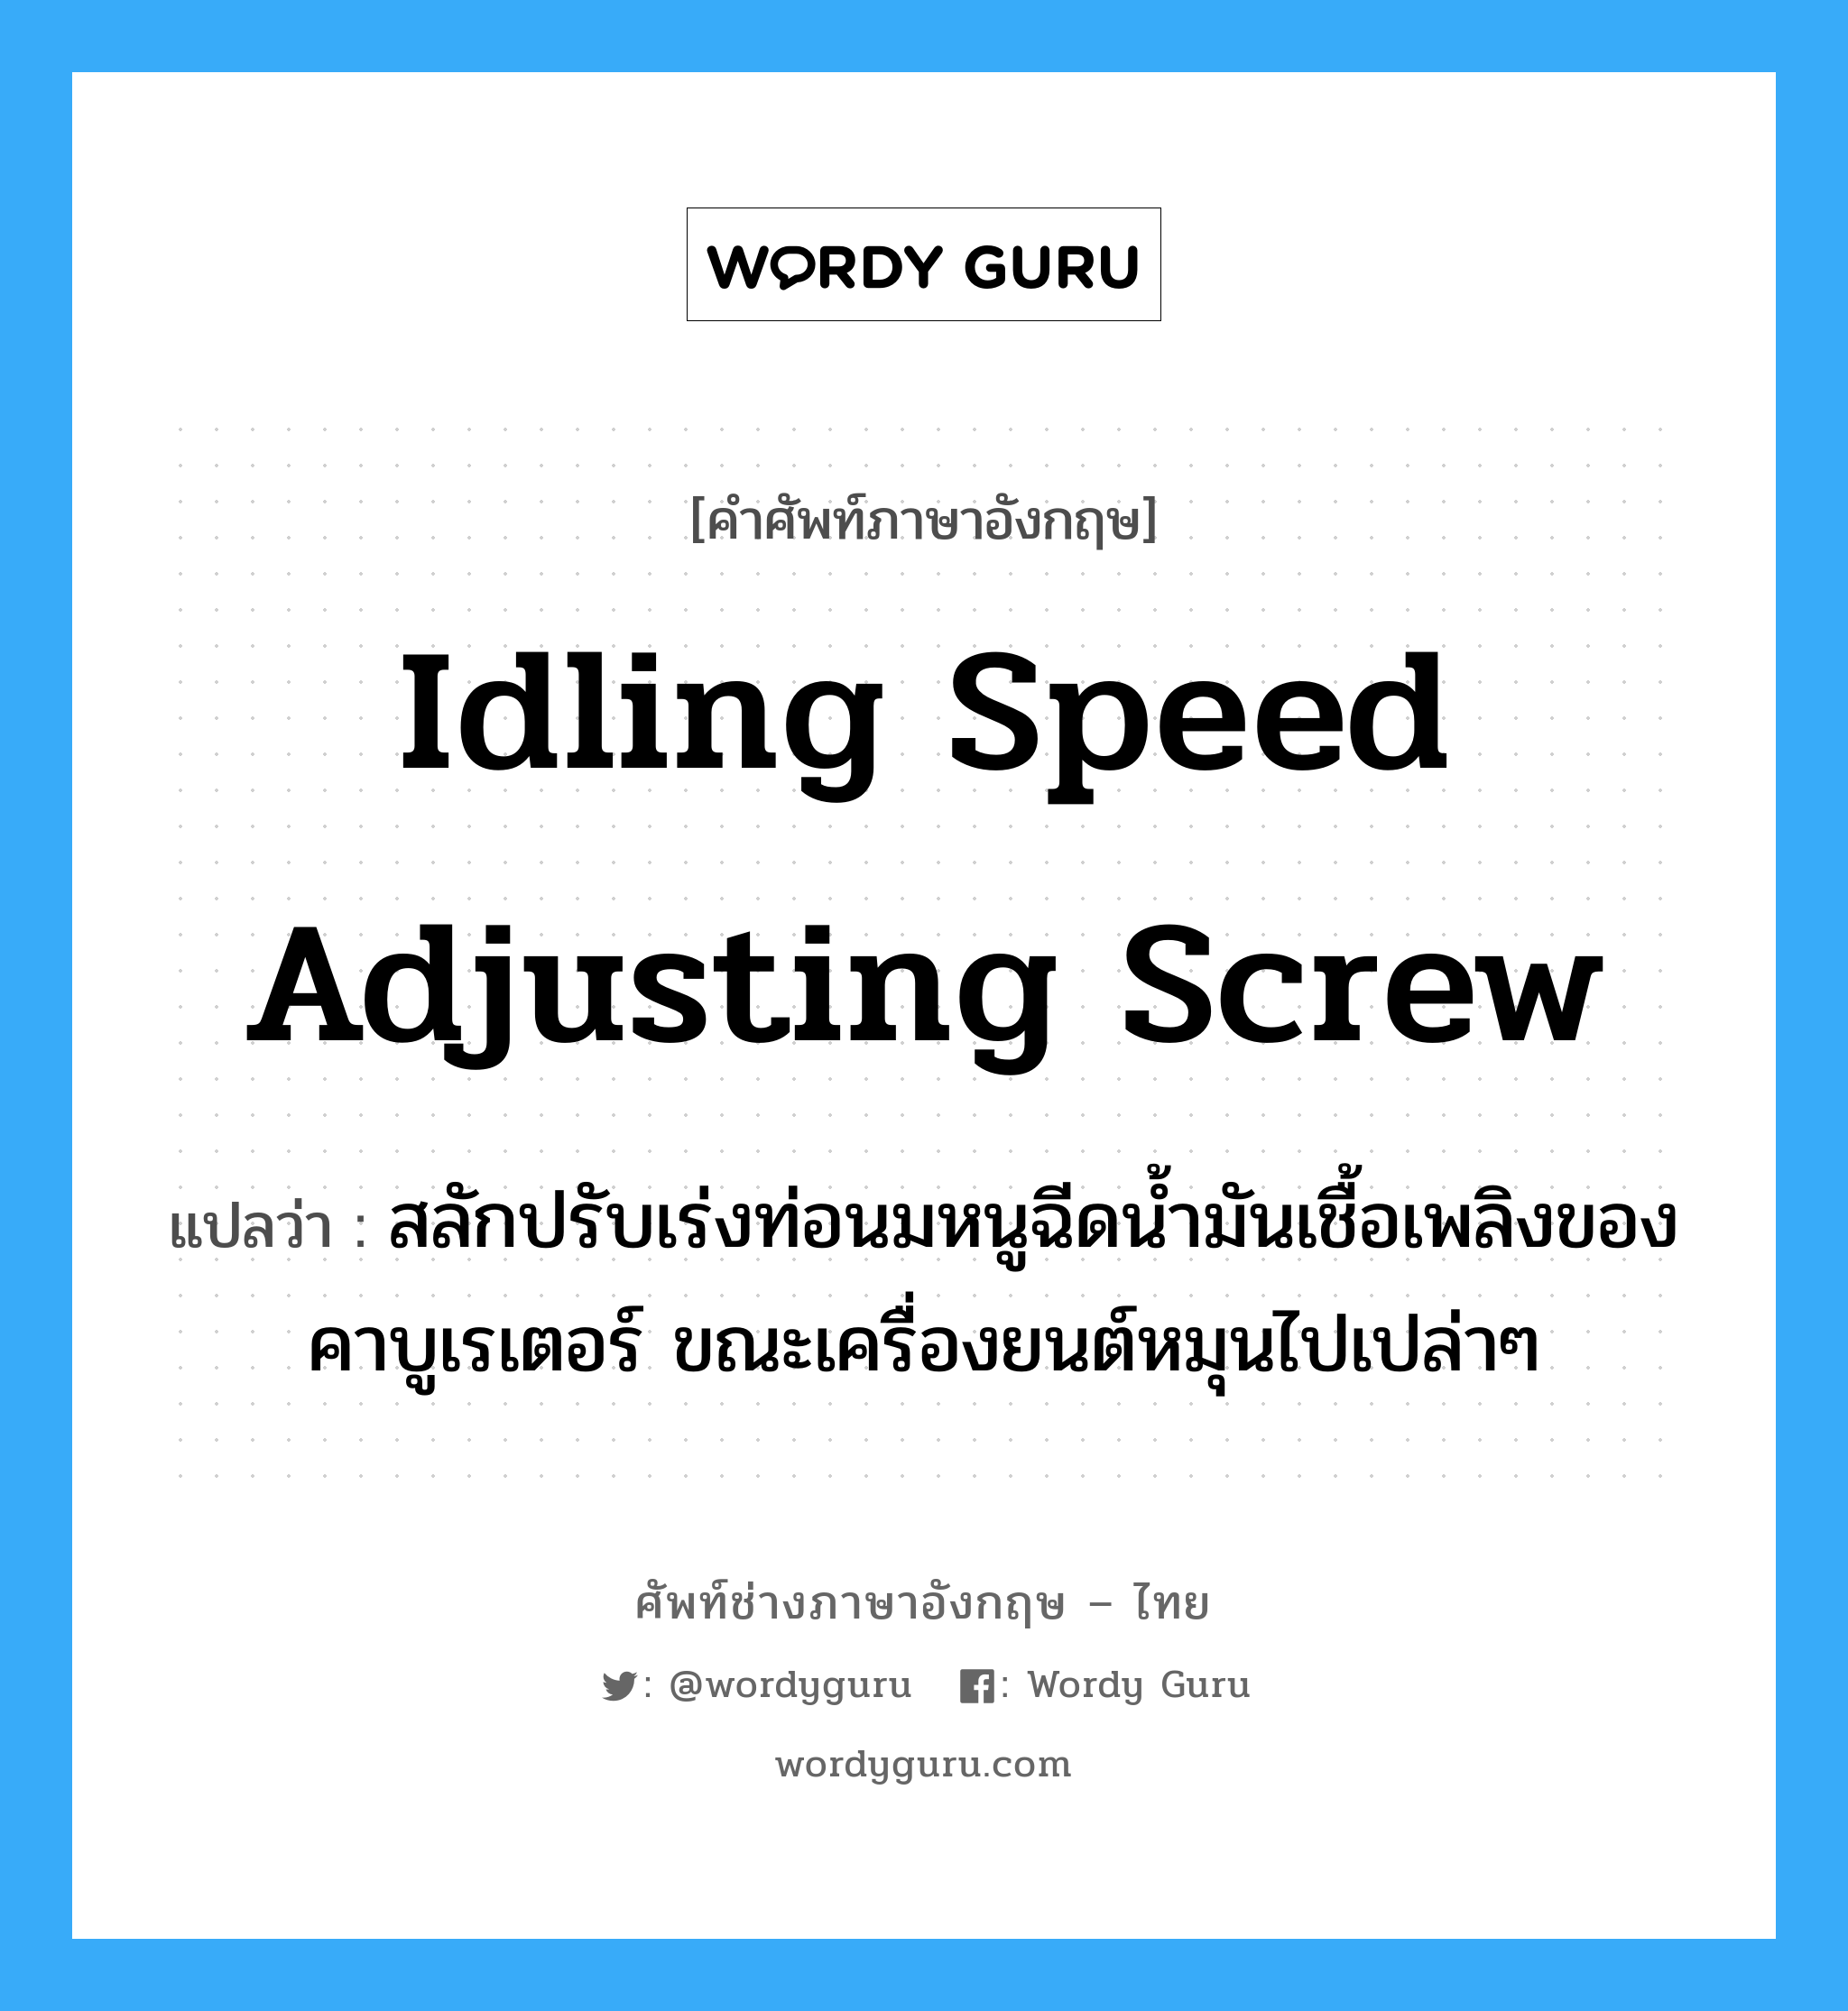 idling speed adjusting screw แปลว่า?, คำศัพท์ช่างภาษาอังกฤษ - ไทย idling speed adjusting screw คำศัพท์ภาษาอังกฤษ idling speed adjusting screw แปลว่า สลักปรับเร่งท่อนมหนูฉีดน้ำมันเชื้อเพลิงของคาบูเรเตอร์ ขณะเครื่องยนต์หมุนไปเปล่าๆ